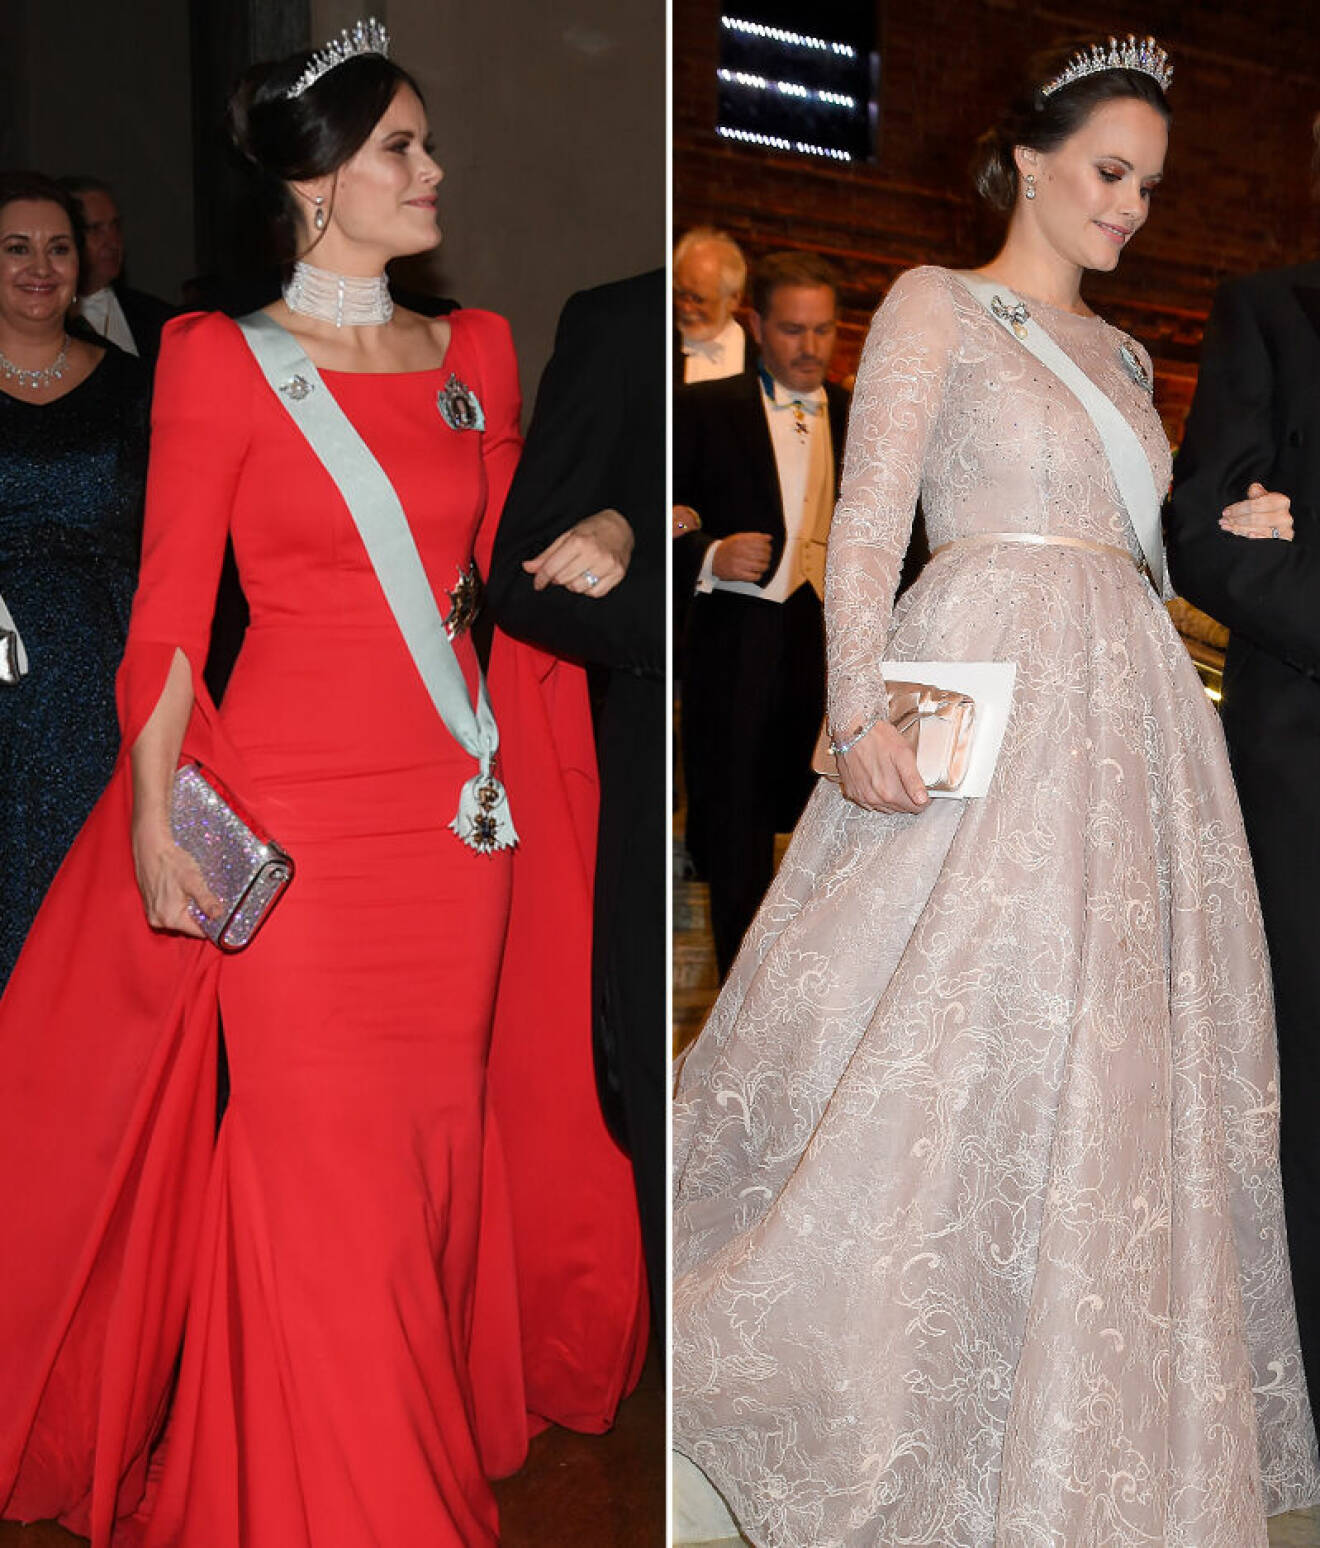 Prinsessan Sofia i röd Nobelklänning 2018 från Zetterberg Couture och puderrosa 2017 från Ida Lanto